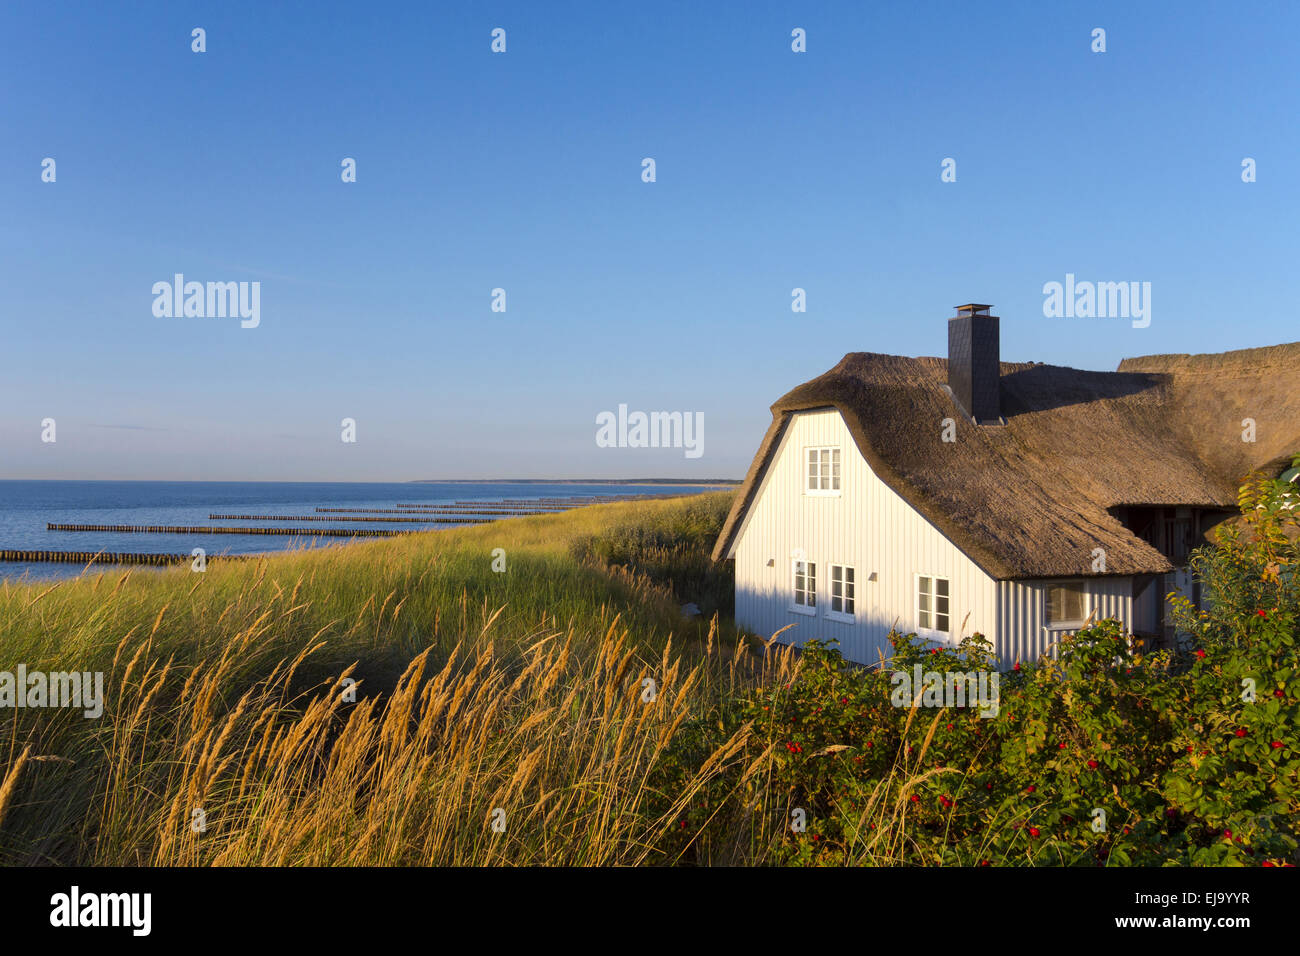 Haus In Den Dunen In Ahrenshoop Stockfotografie Alamy